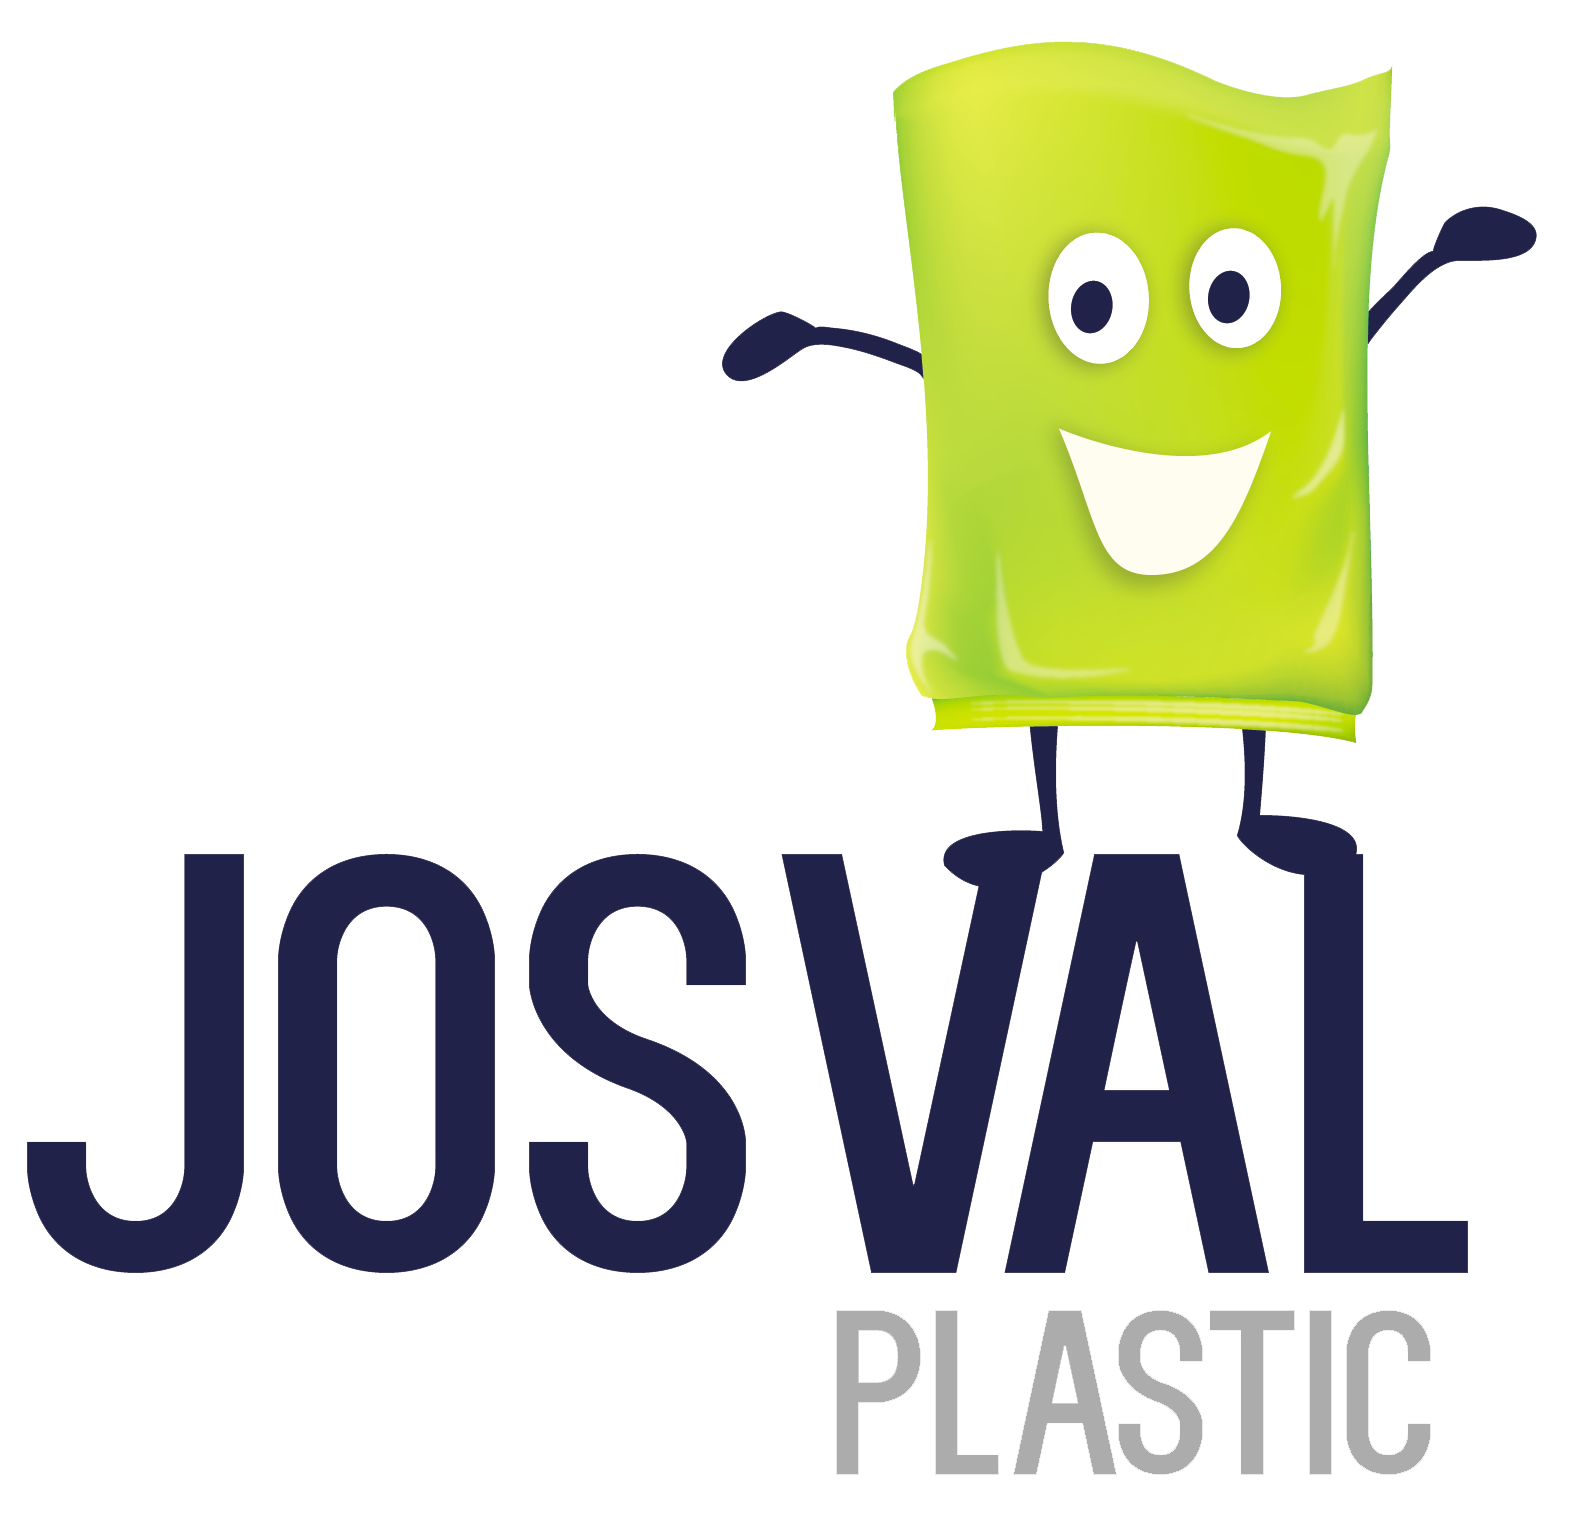 Josval Plastic